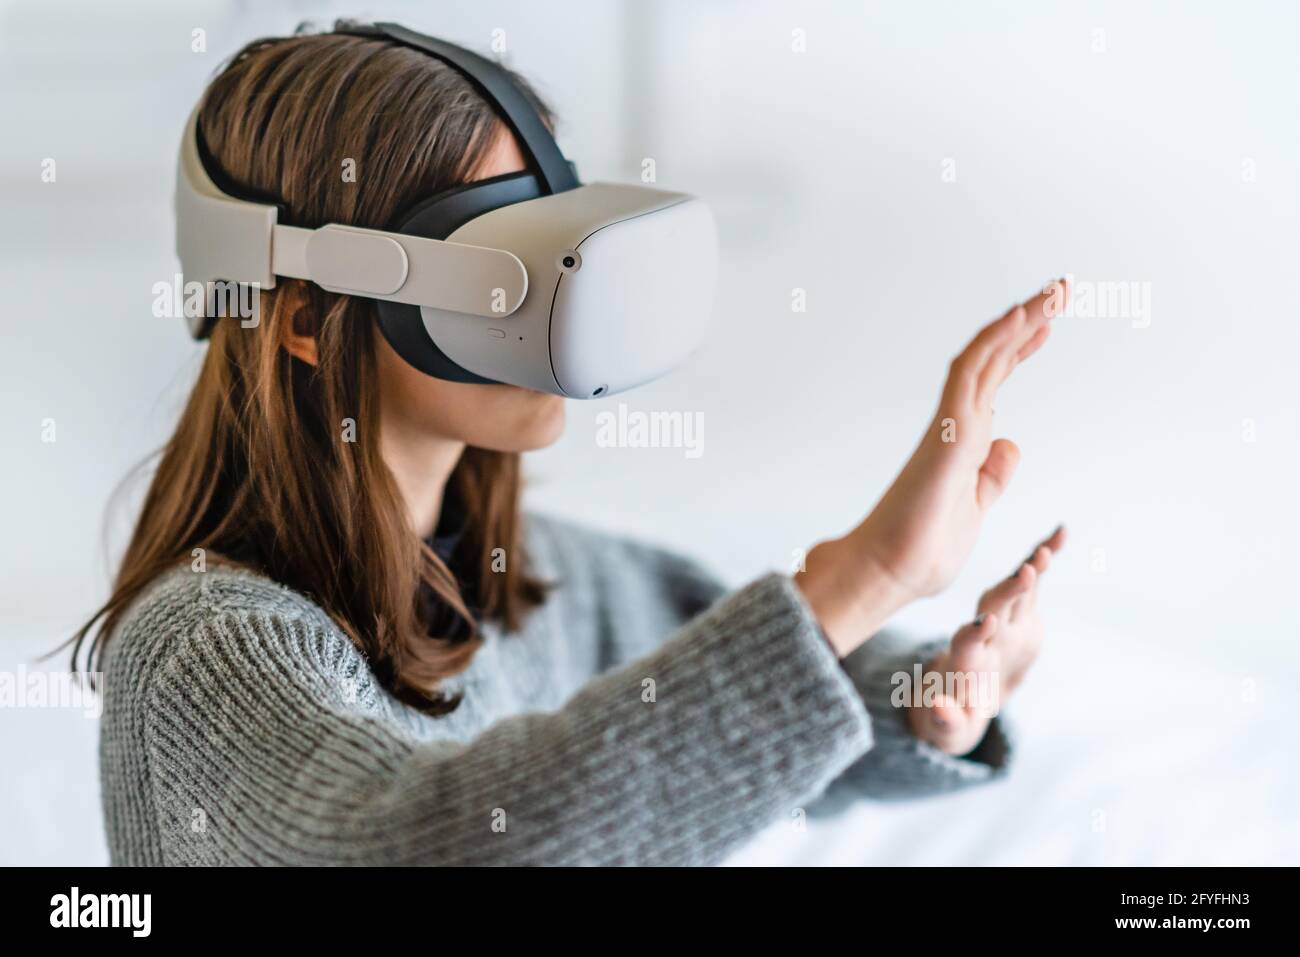 Adolescente usando el auricular oculus de realidad virtual. Foto de stock